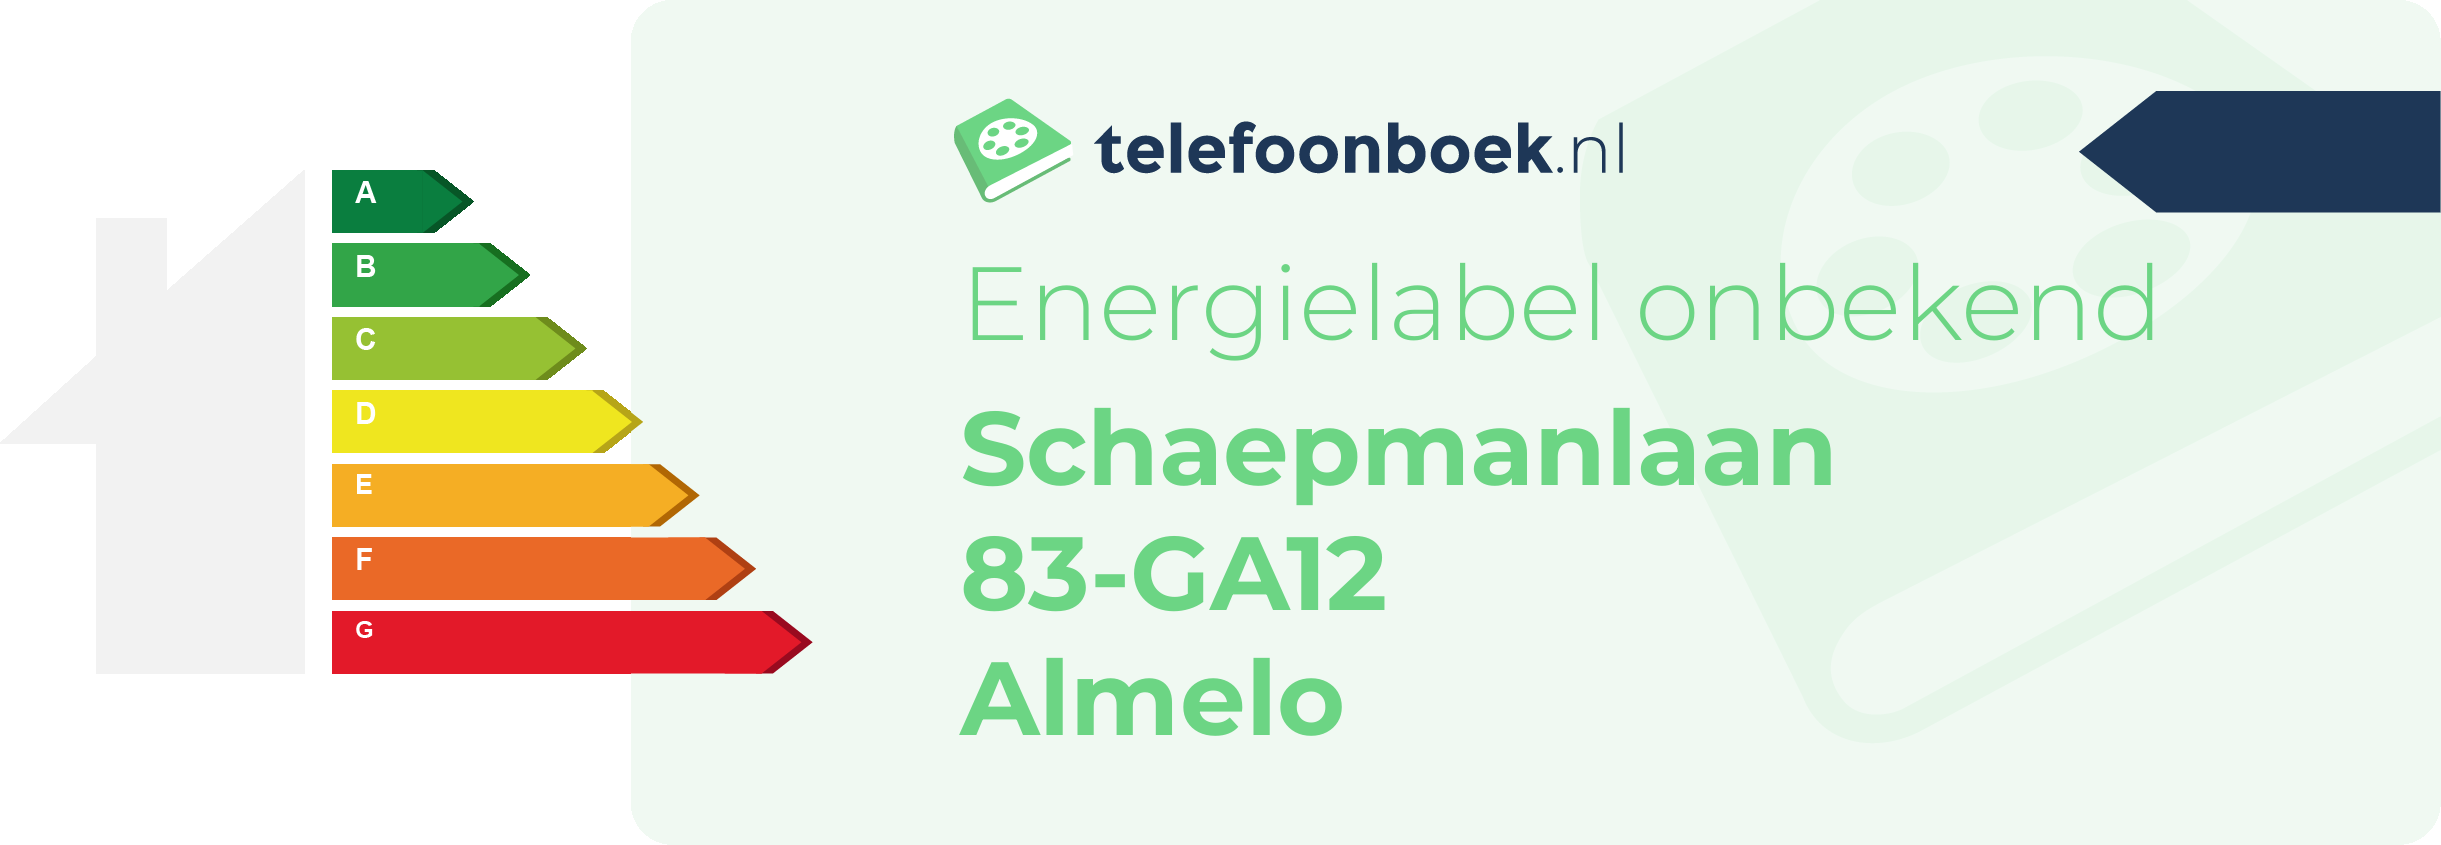 Energielabel Schaepmanlaan 83-GA12 Almelo